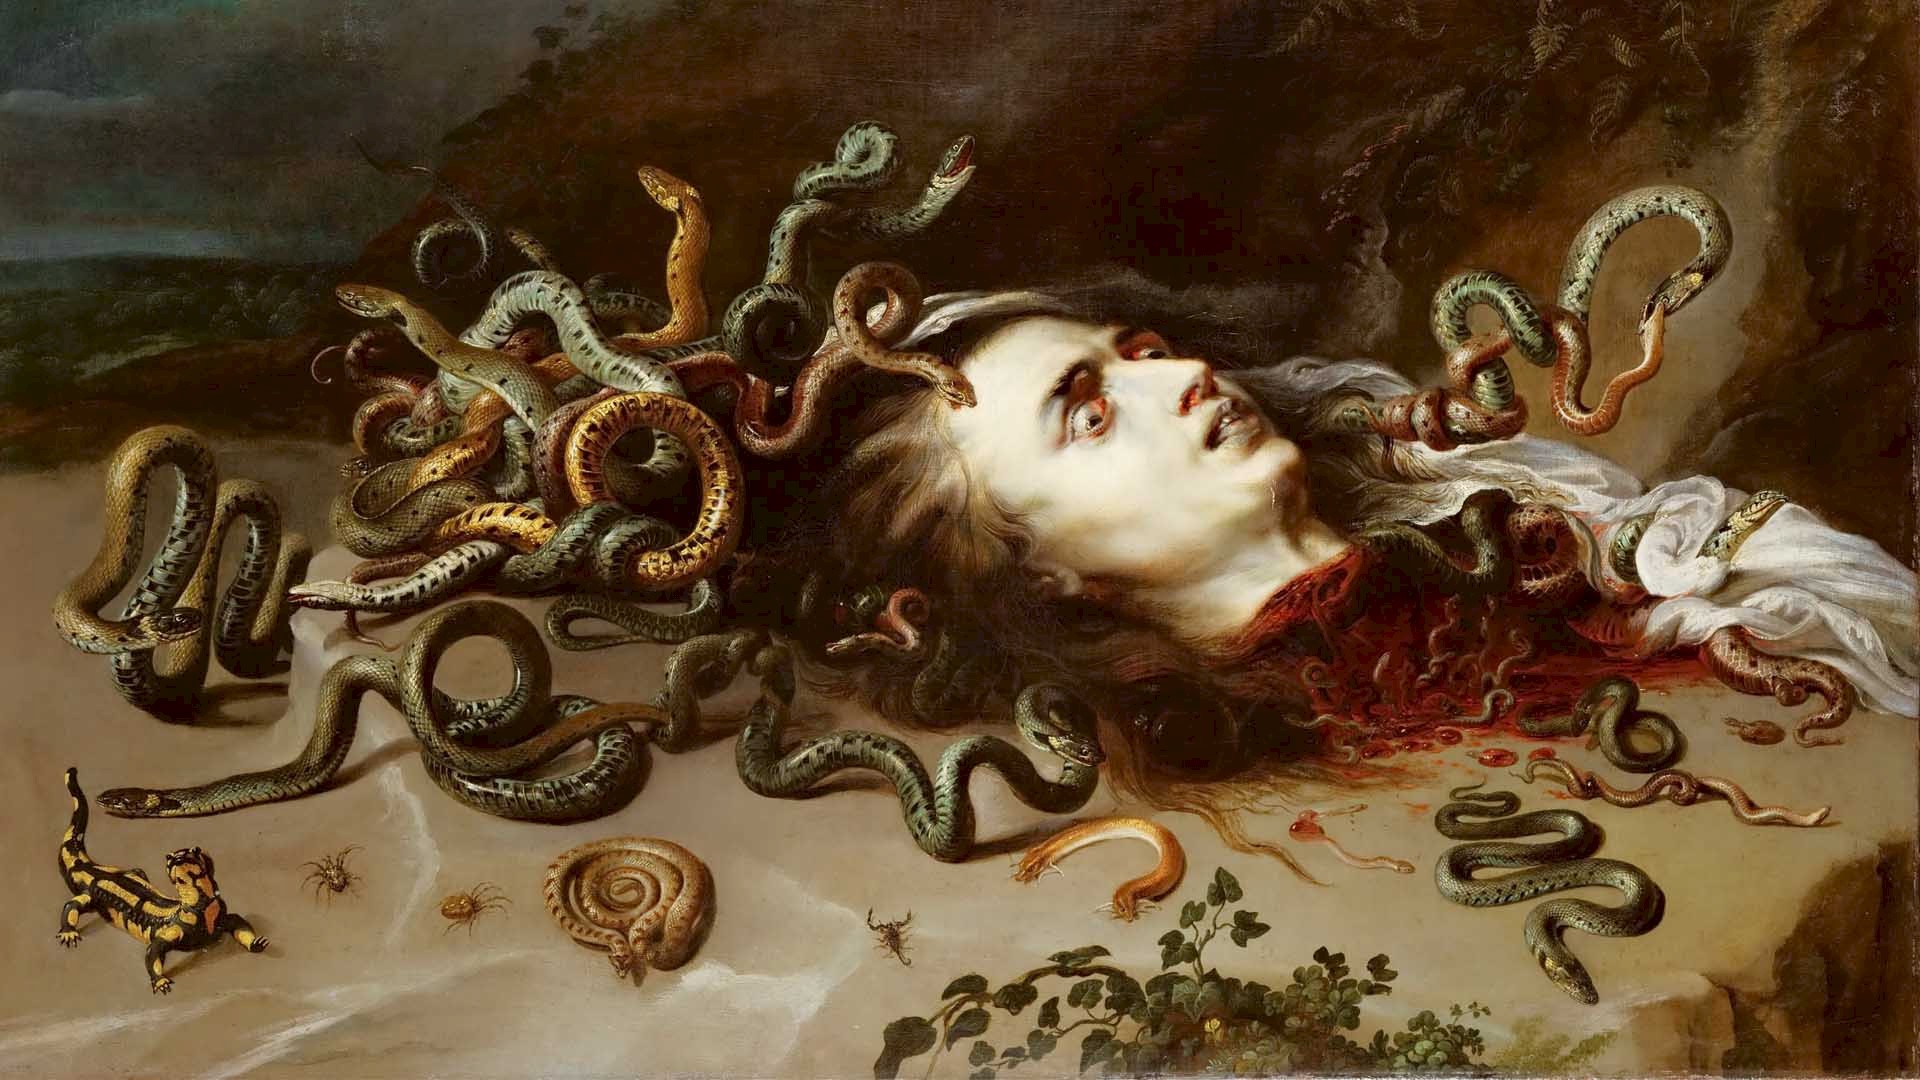 The gorgon Medusa